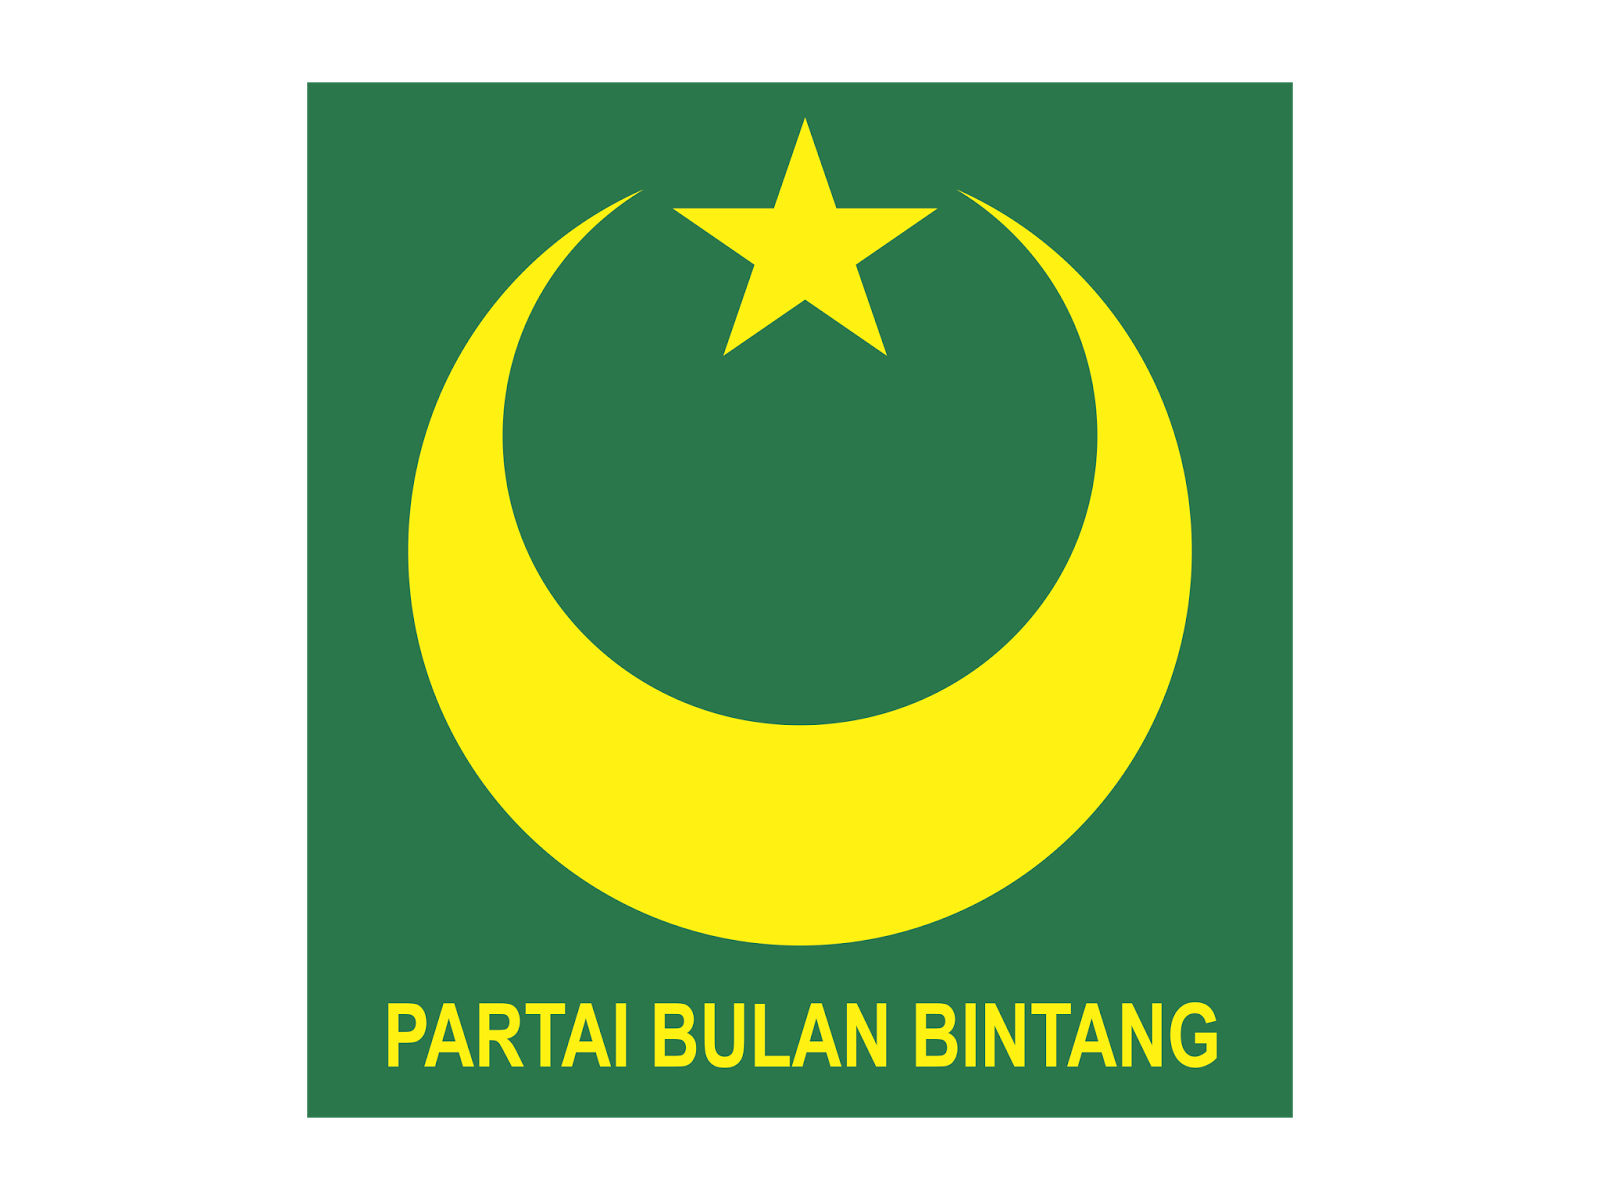  Logo Partai Bulan Bintang Format Cdr GUDRIL LOGO 